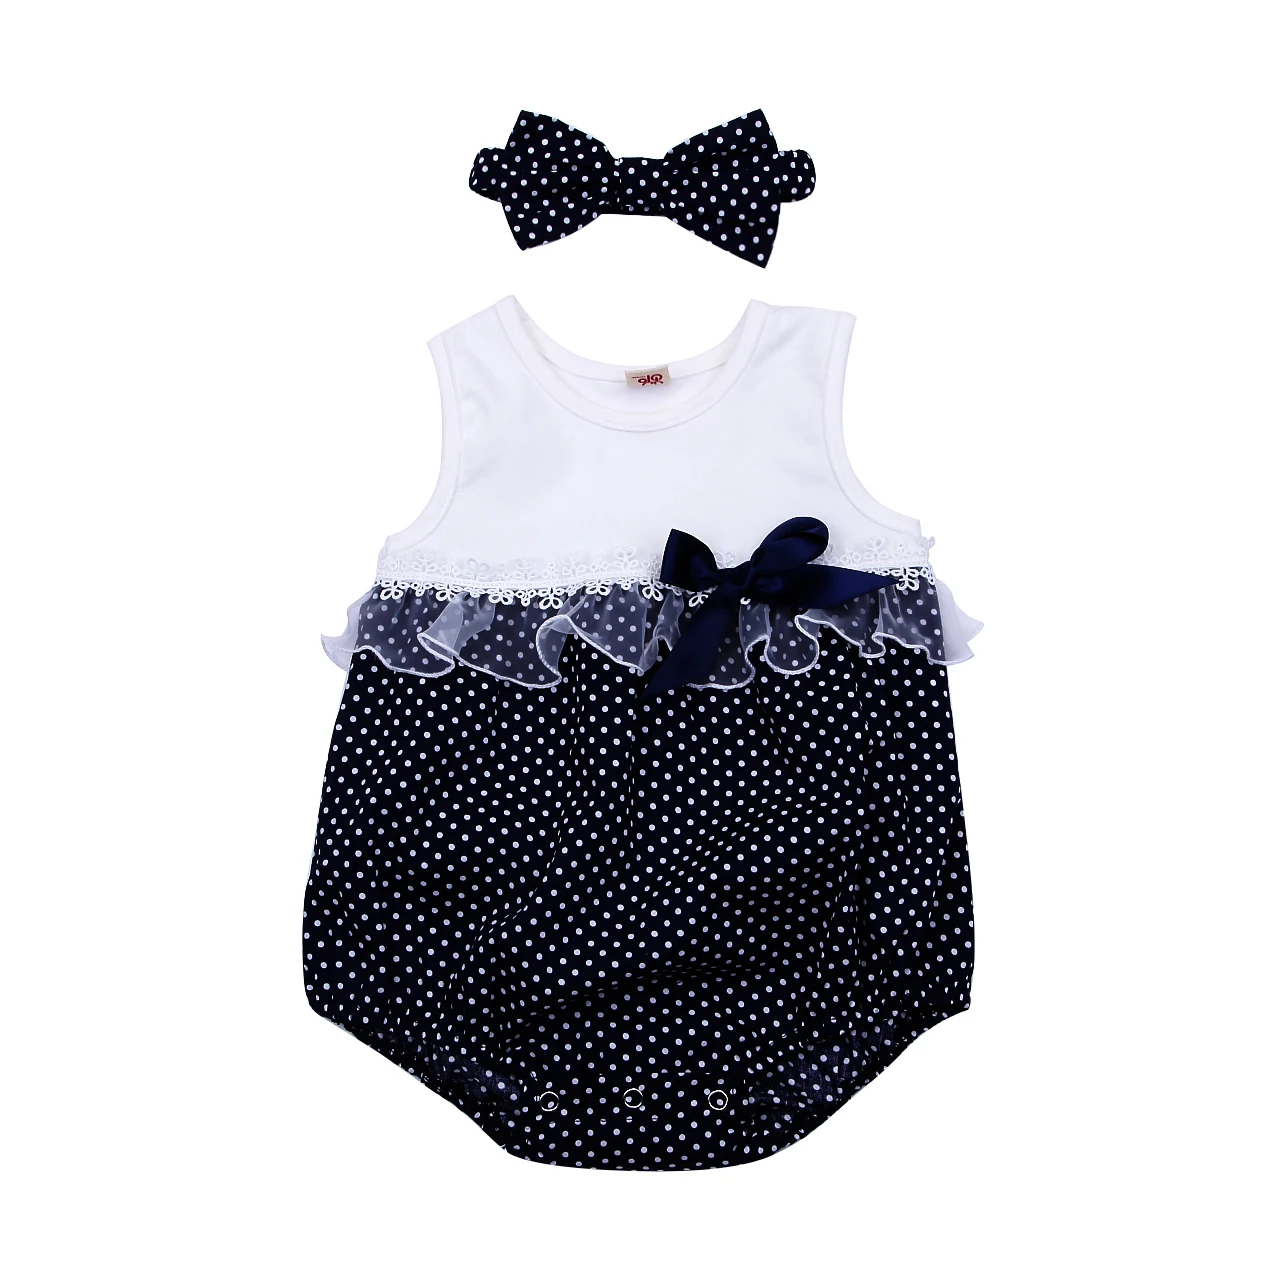 Лоскутная одежда для малышей Детские комбинезоны с печатью в горошек+ повязка на голову для девочки кружевная Одежда для новорожденных без рукавов хлопковый летний комплект из 2 предметов - Цвет: Синий